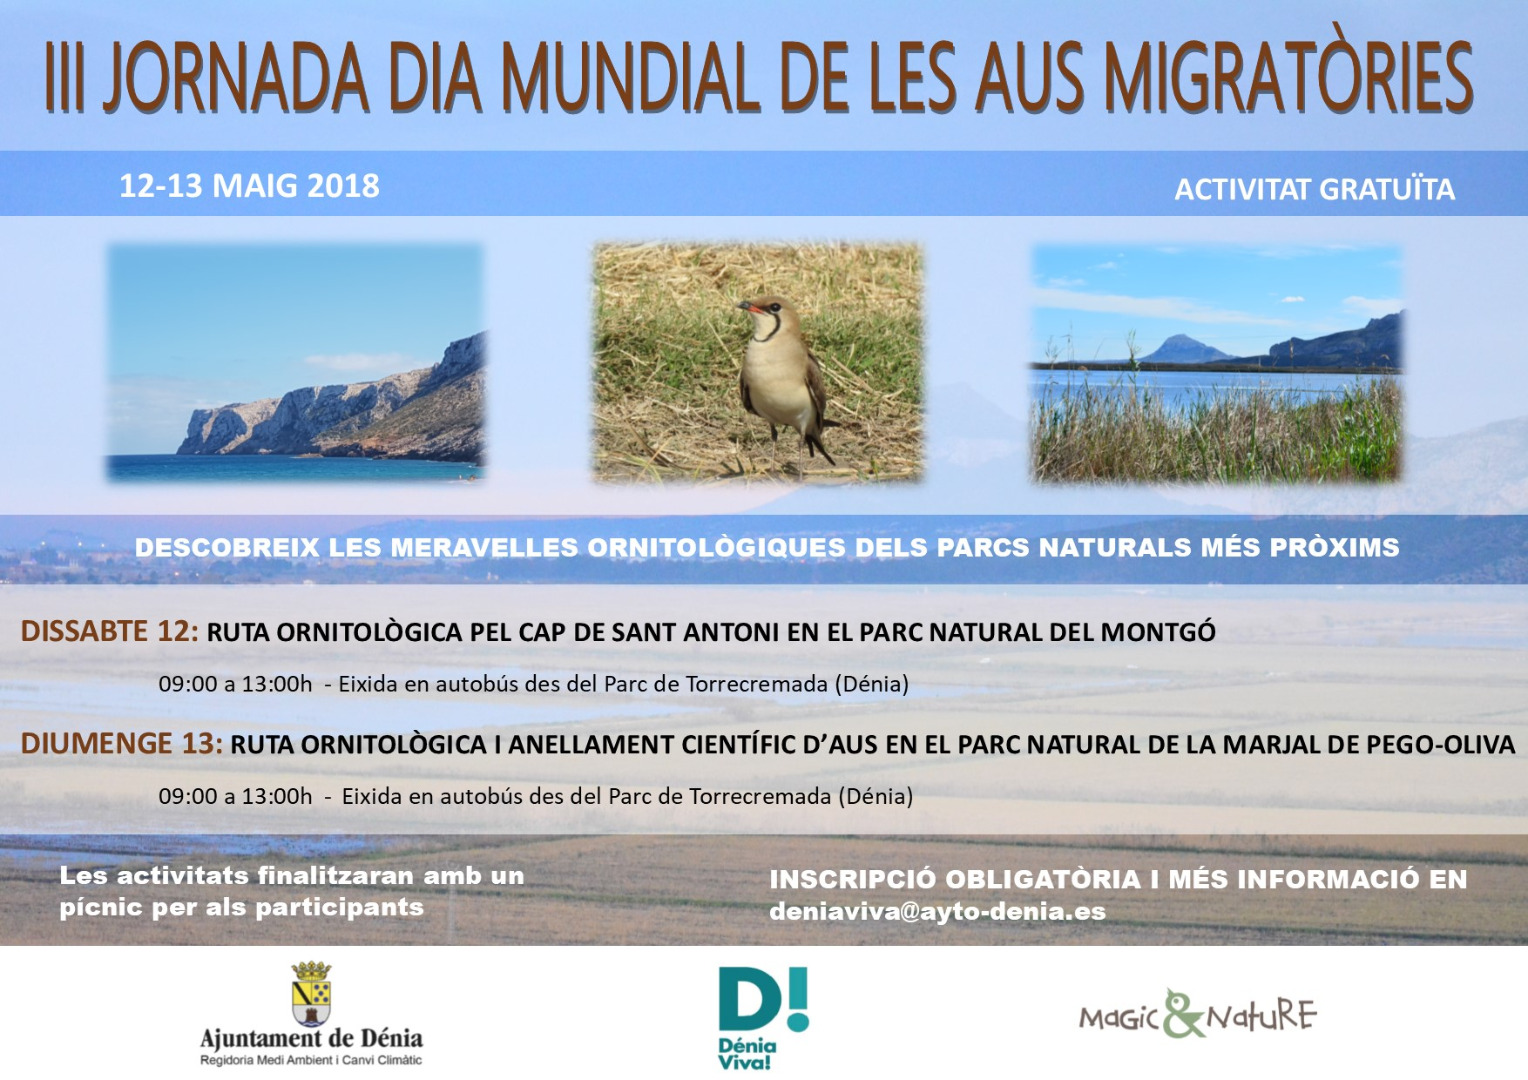  Jornades al voltant del Dia Mundial de les aus migratòries 